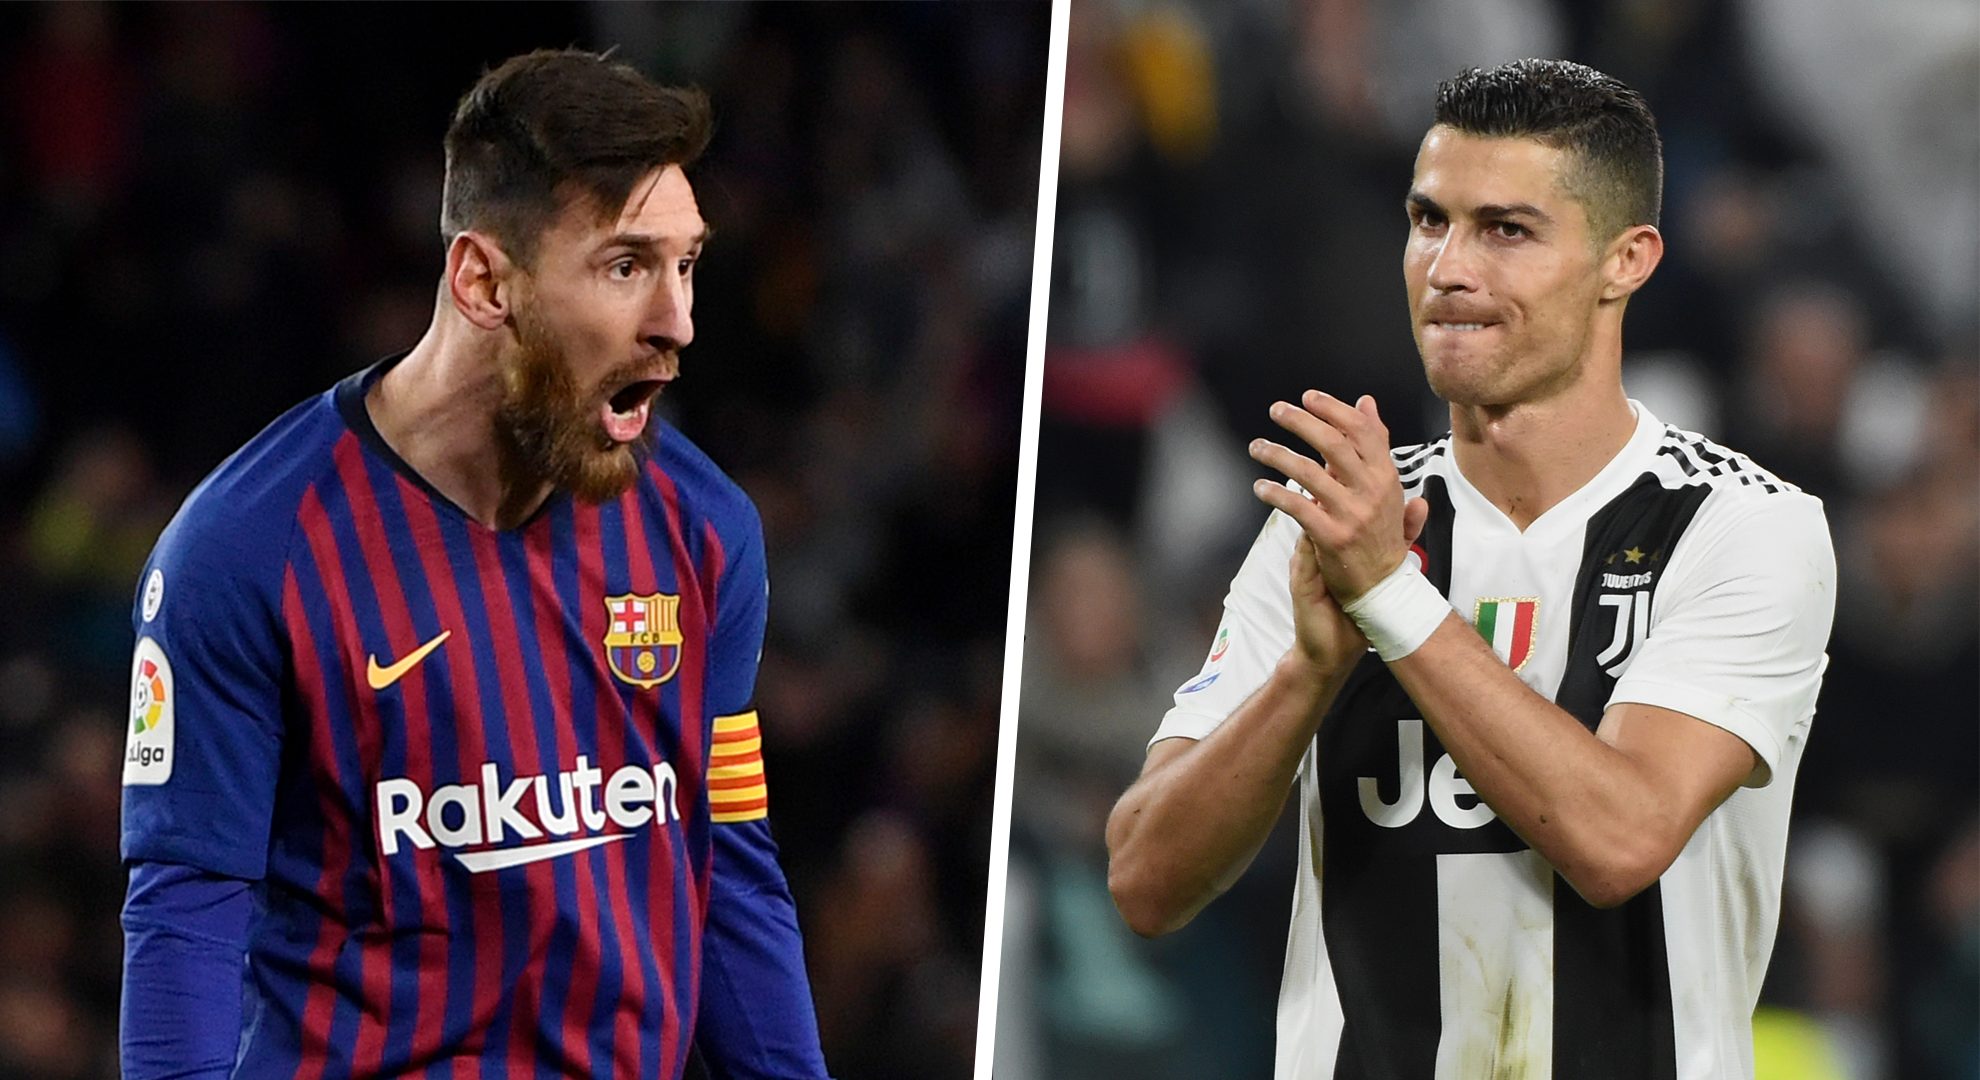 Ce que Ronaldo et Messi ont dit de leur rivalité